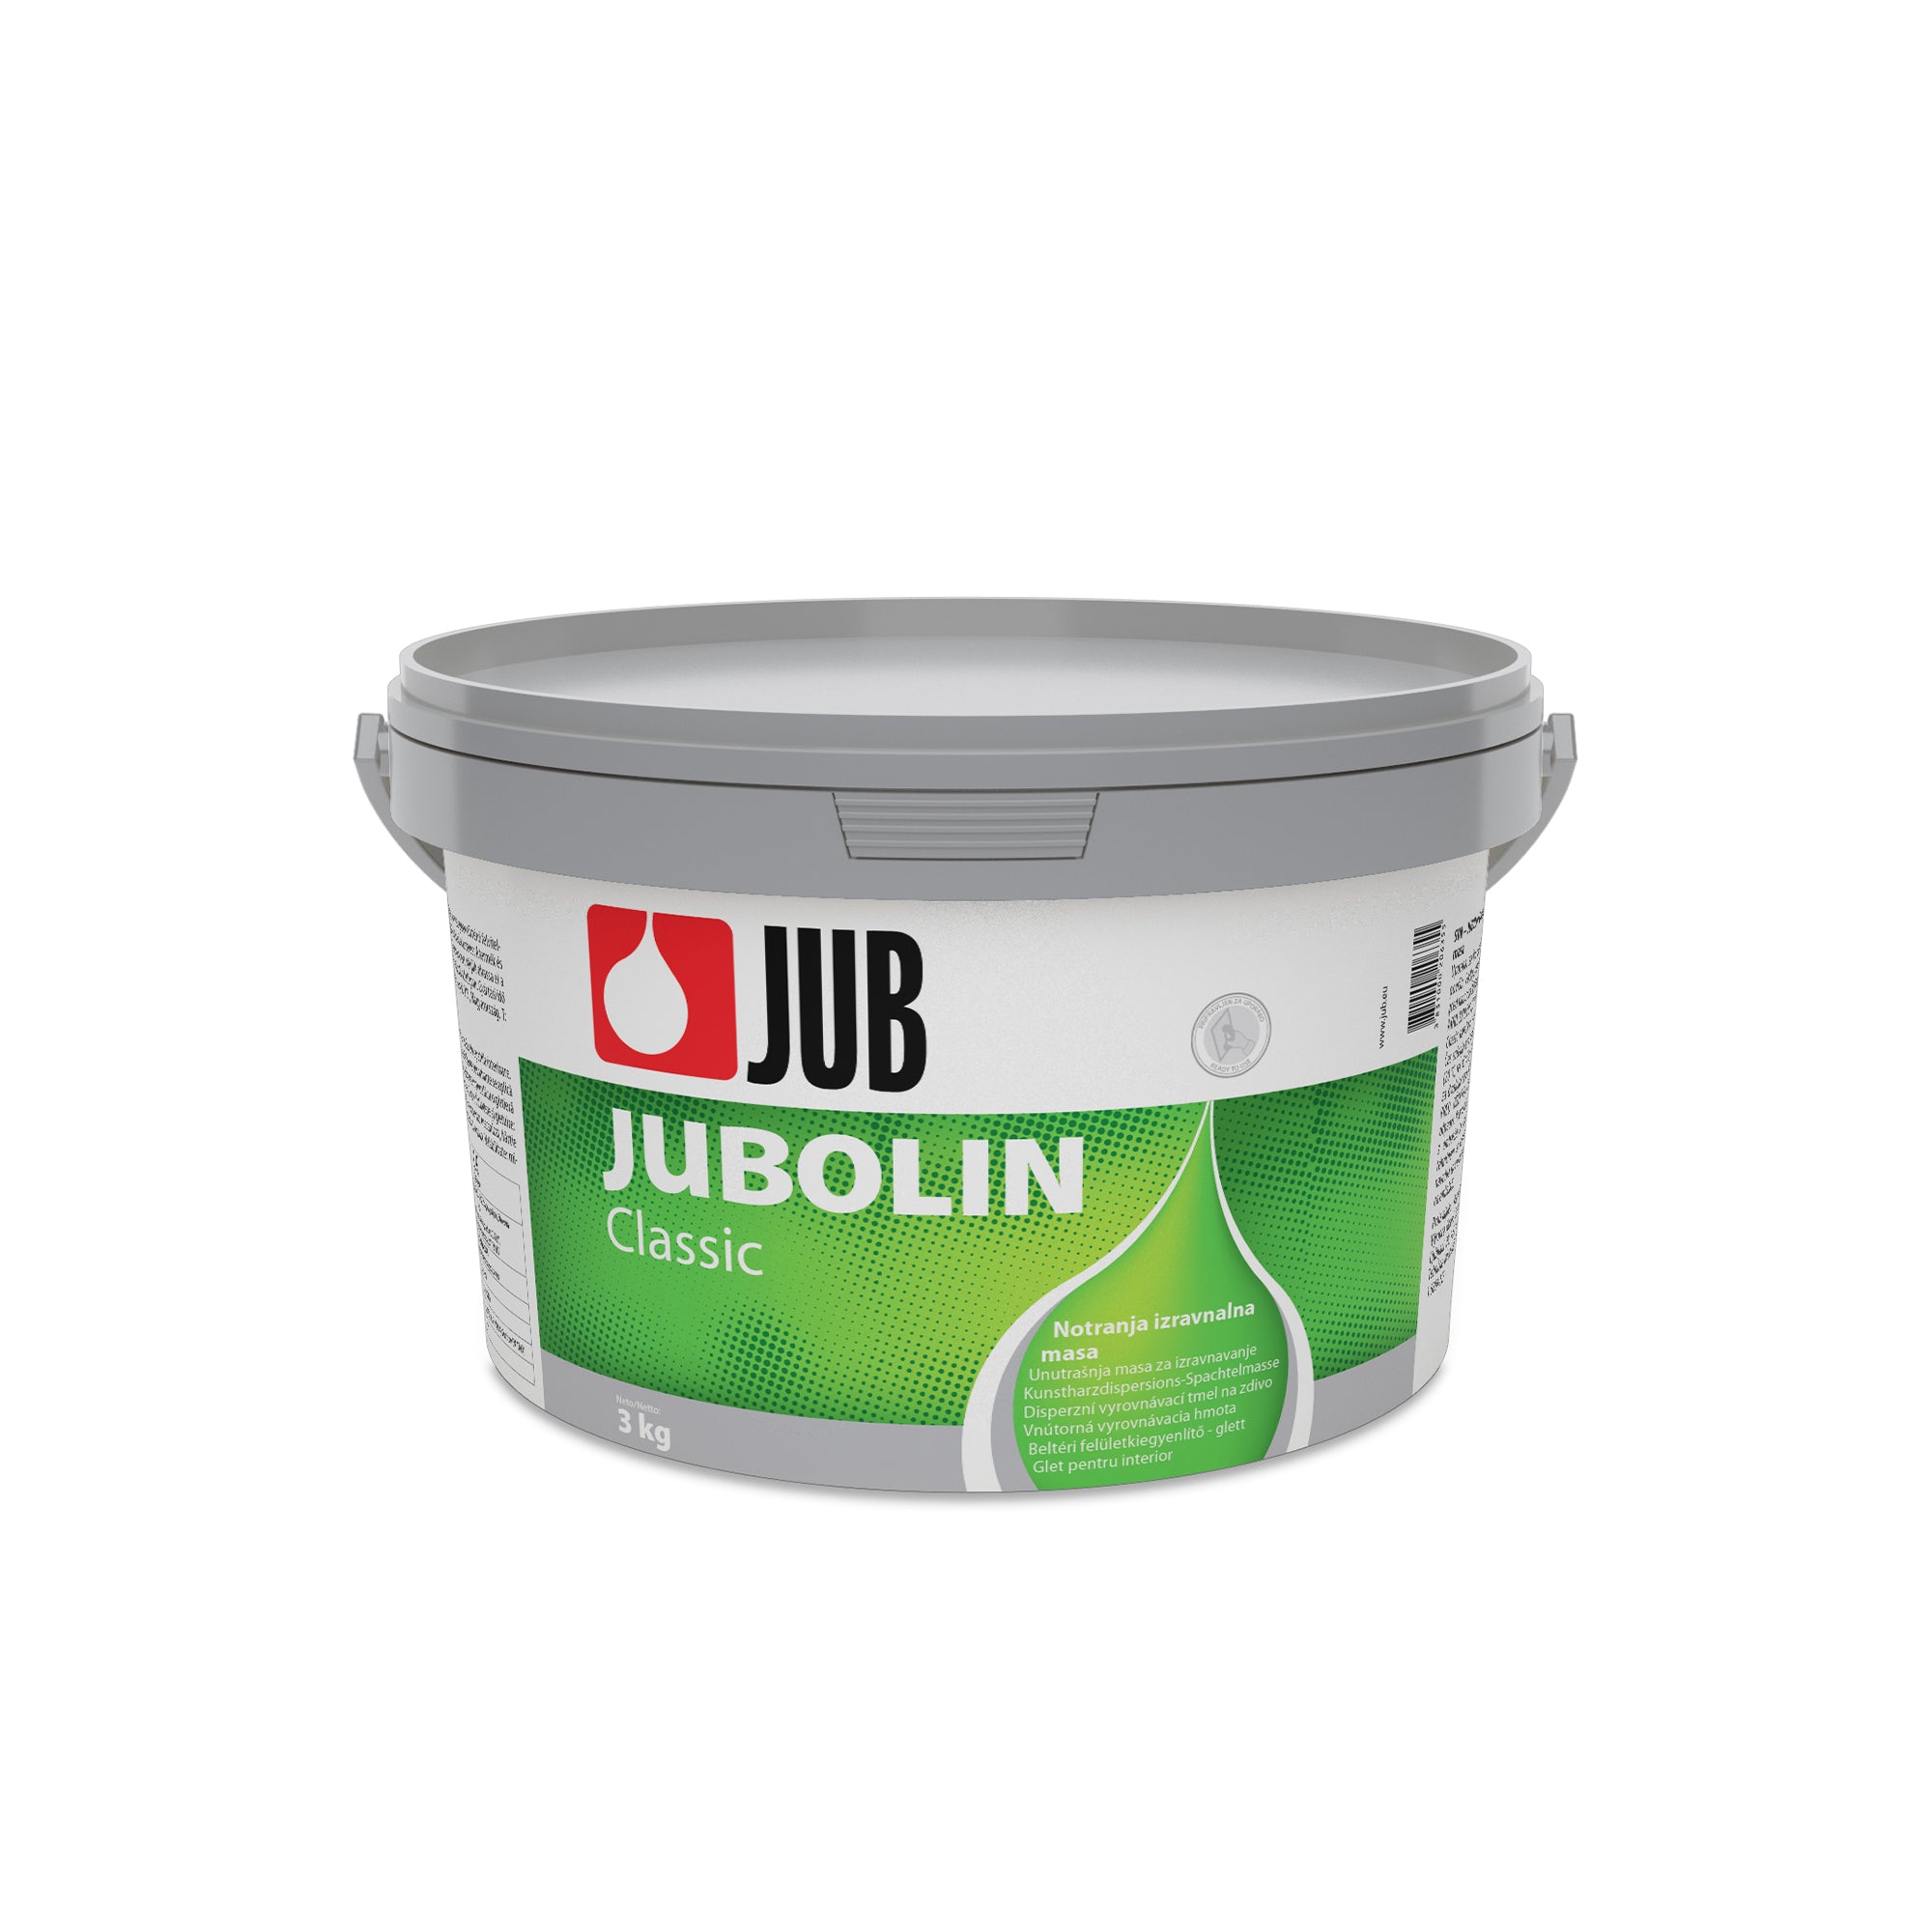 JUB JUBOLIN Classic vnútorná vyrovnávacia hmota 1 kg